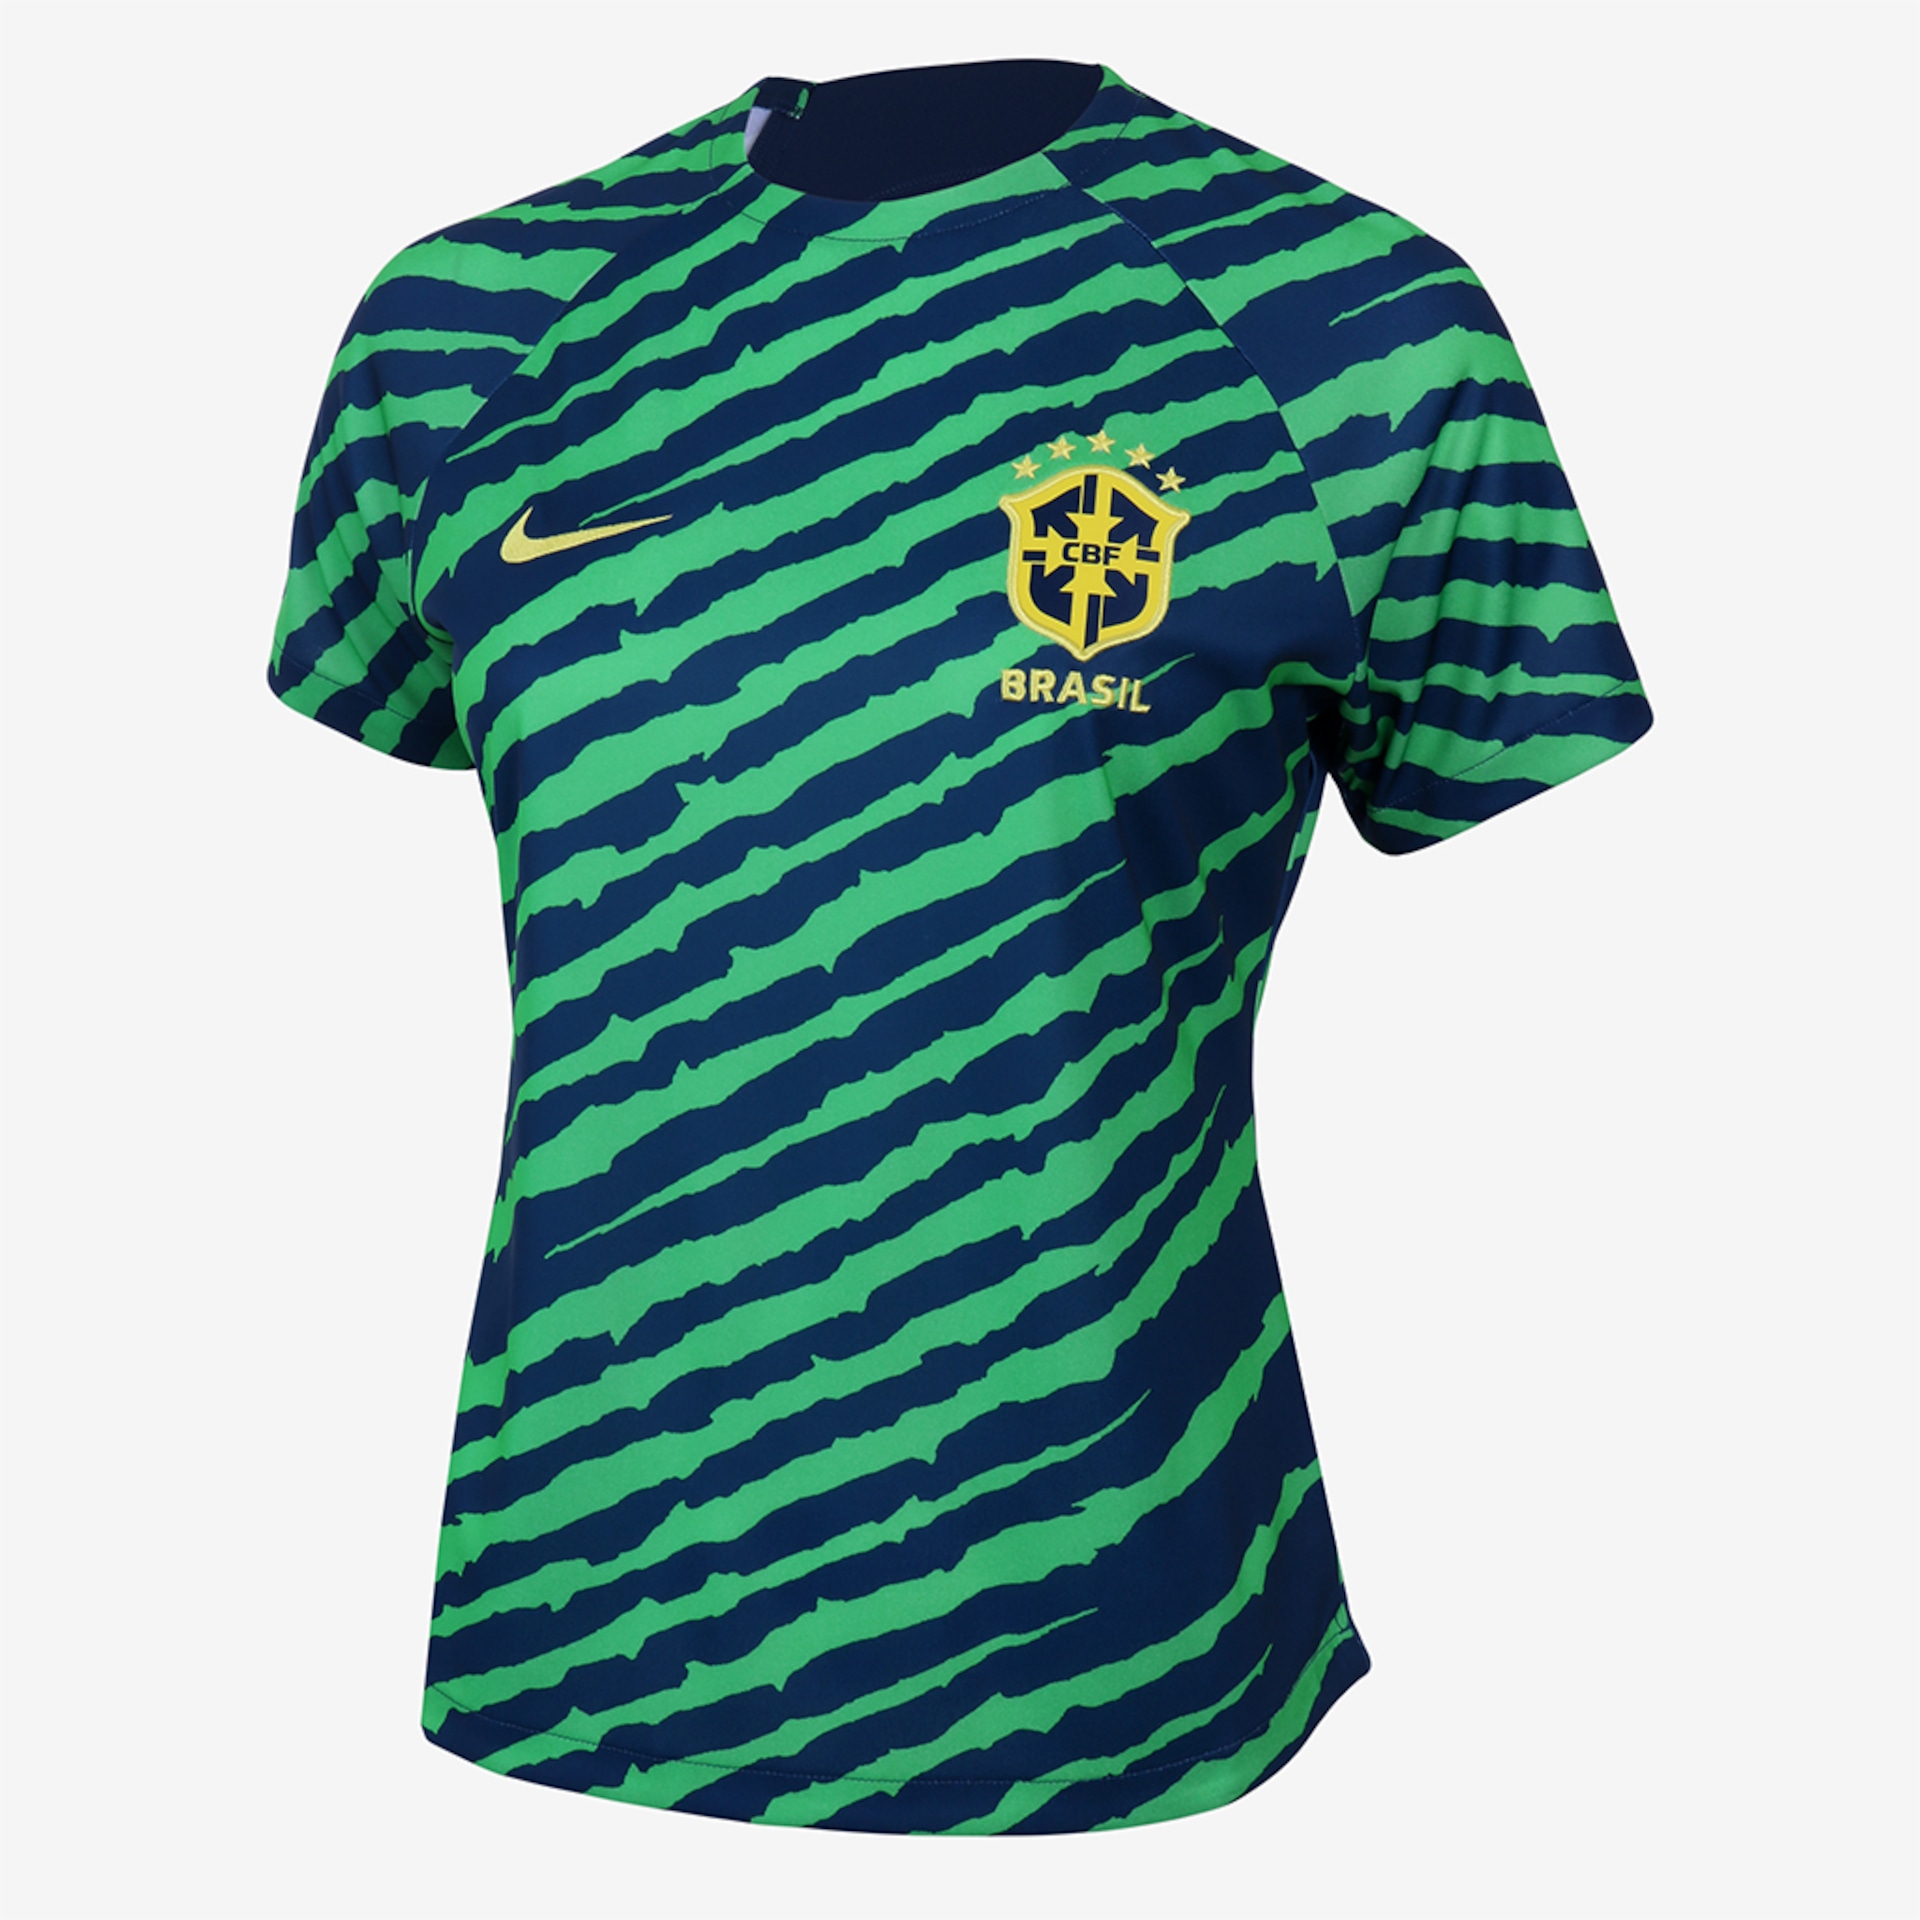 Roupas Camisas de Times de futebol Brasil - Nike - Ofertas e Preços